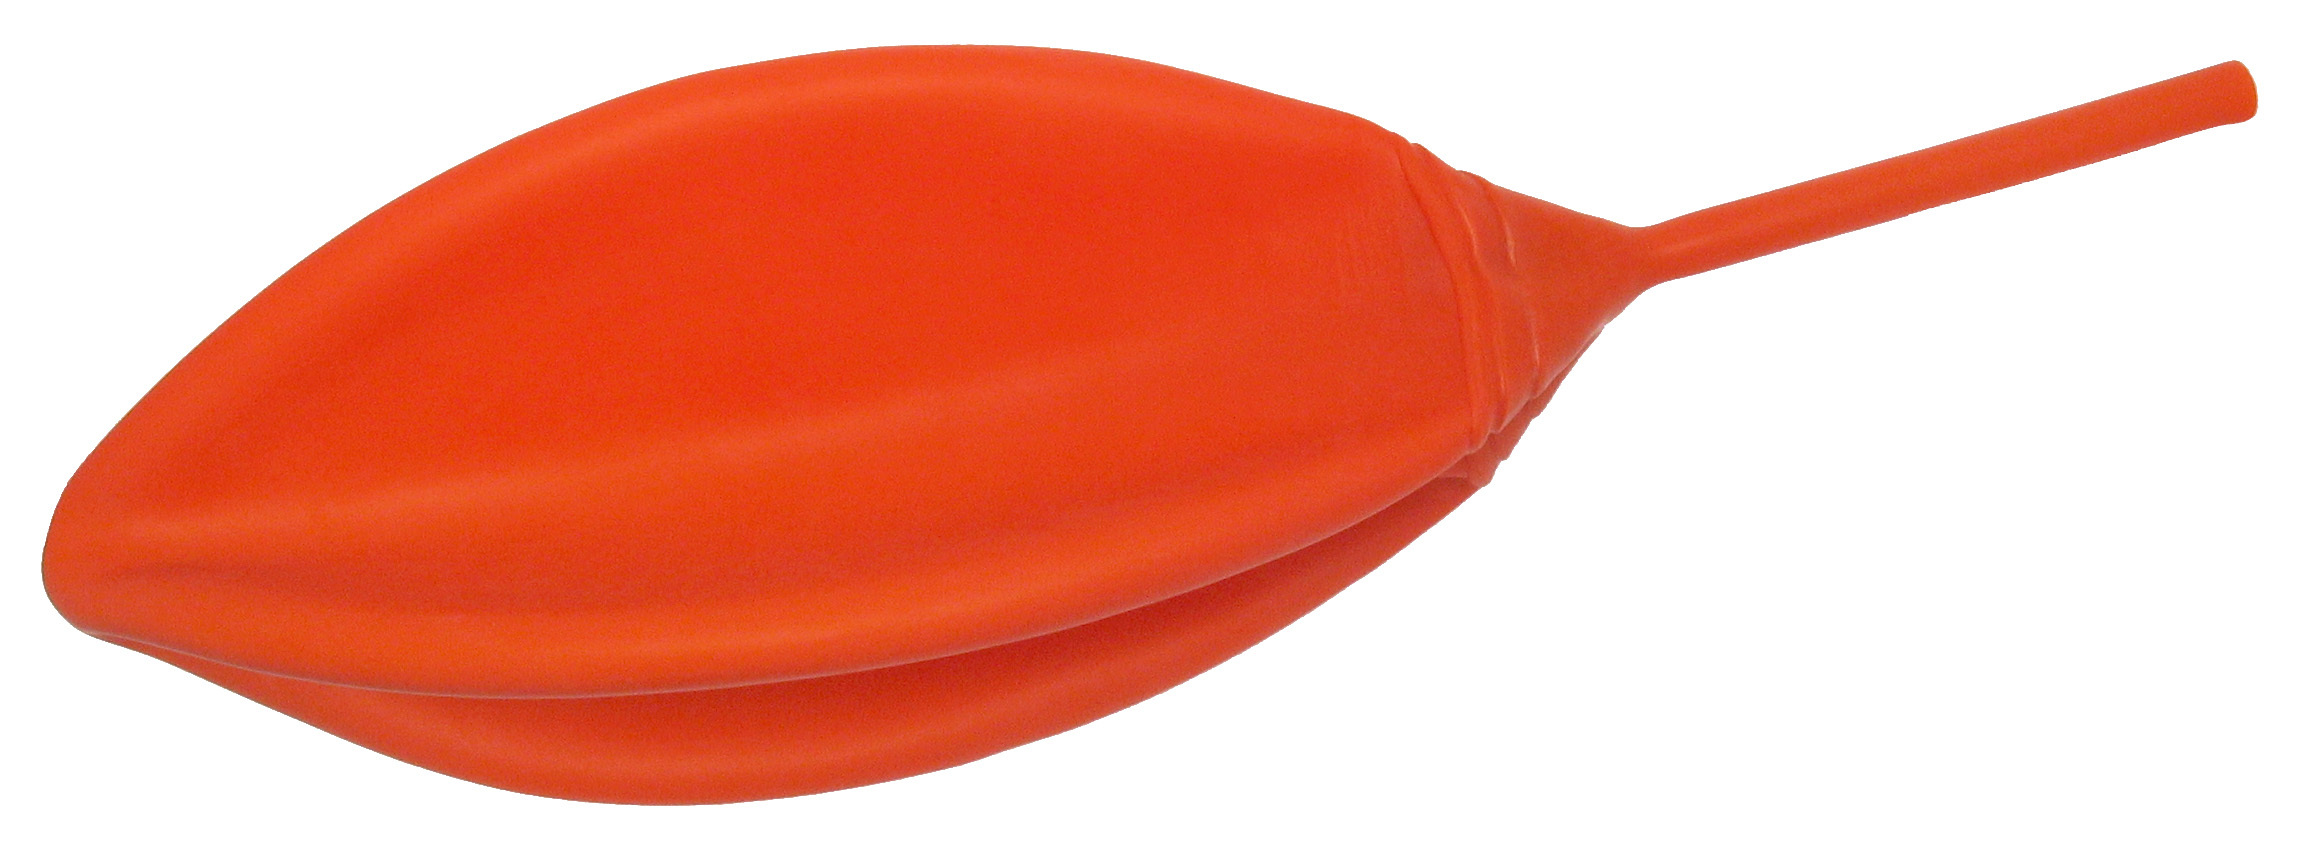 Balloon orange rubber size 8
for GasTest delta